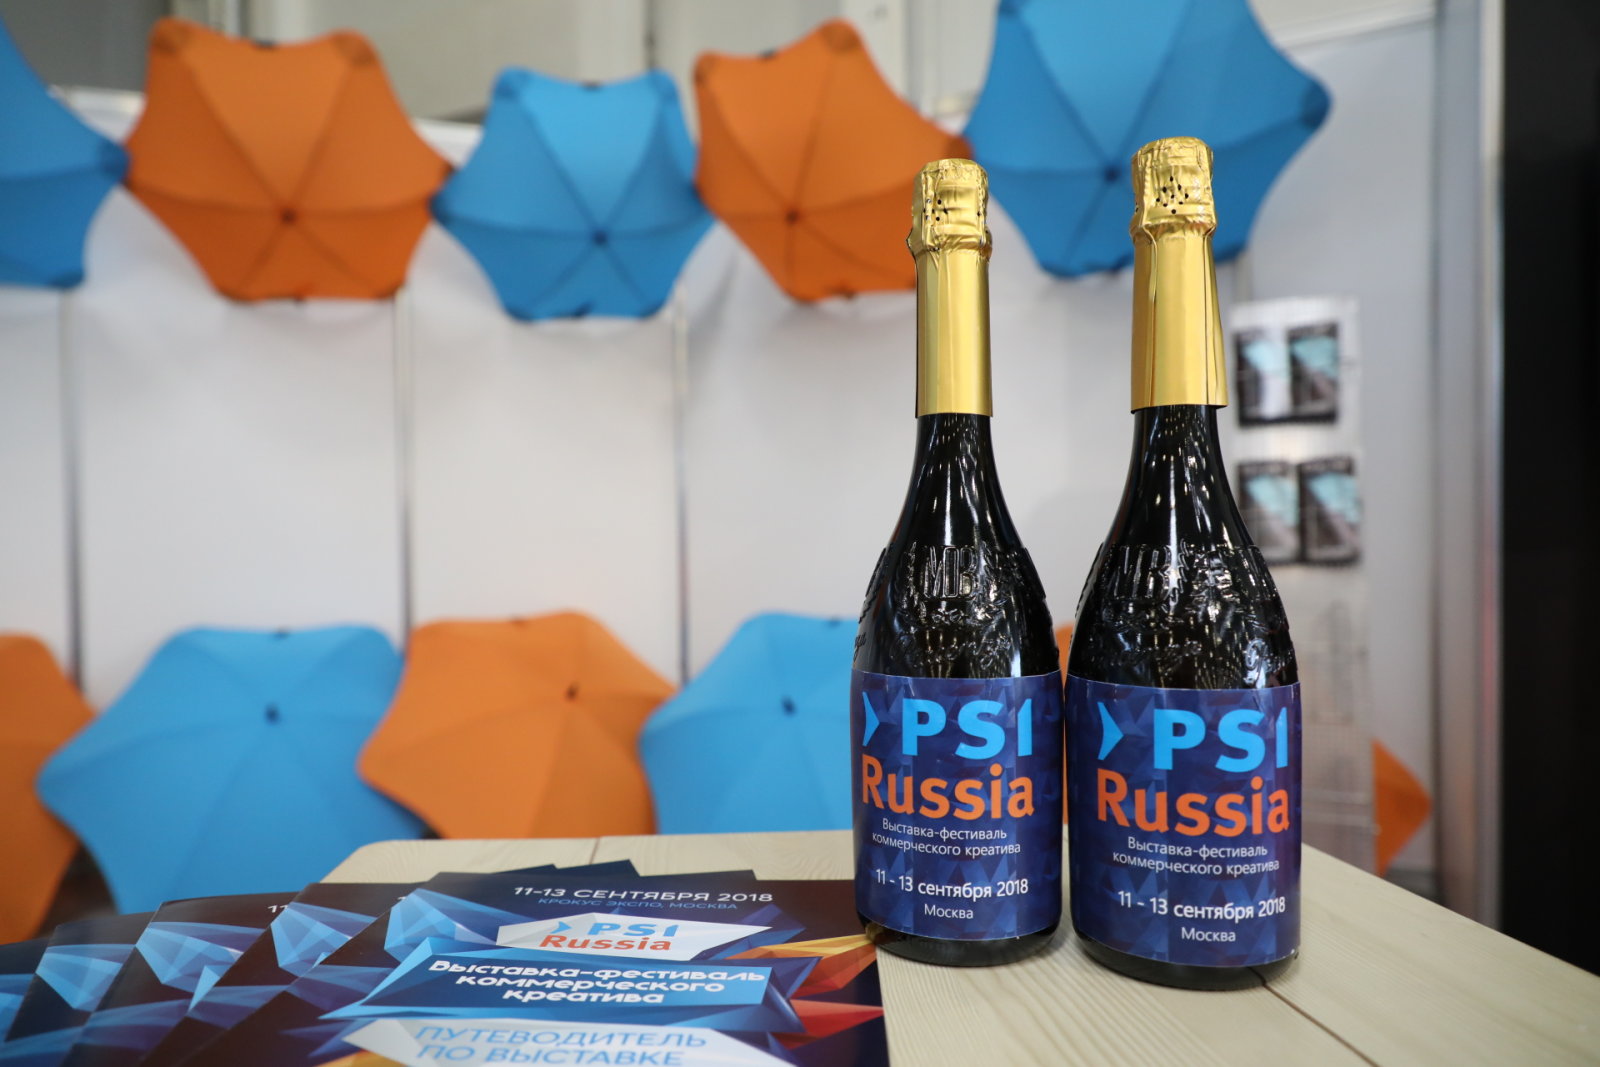    PSI Russia 2018.  